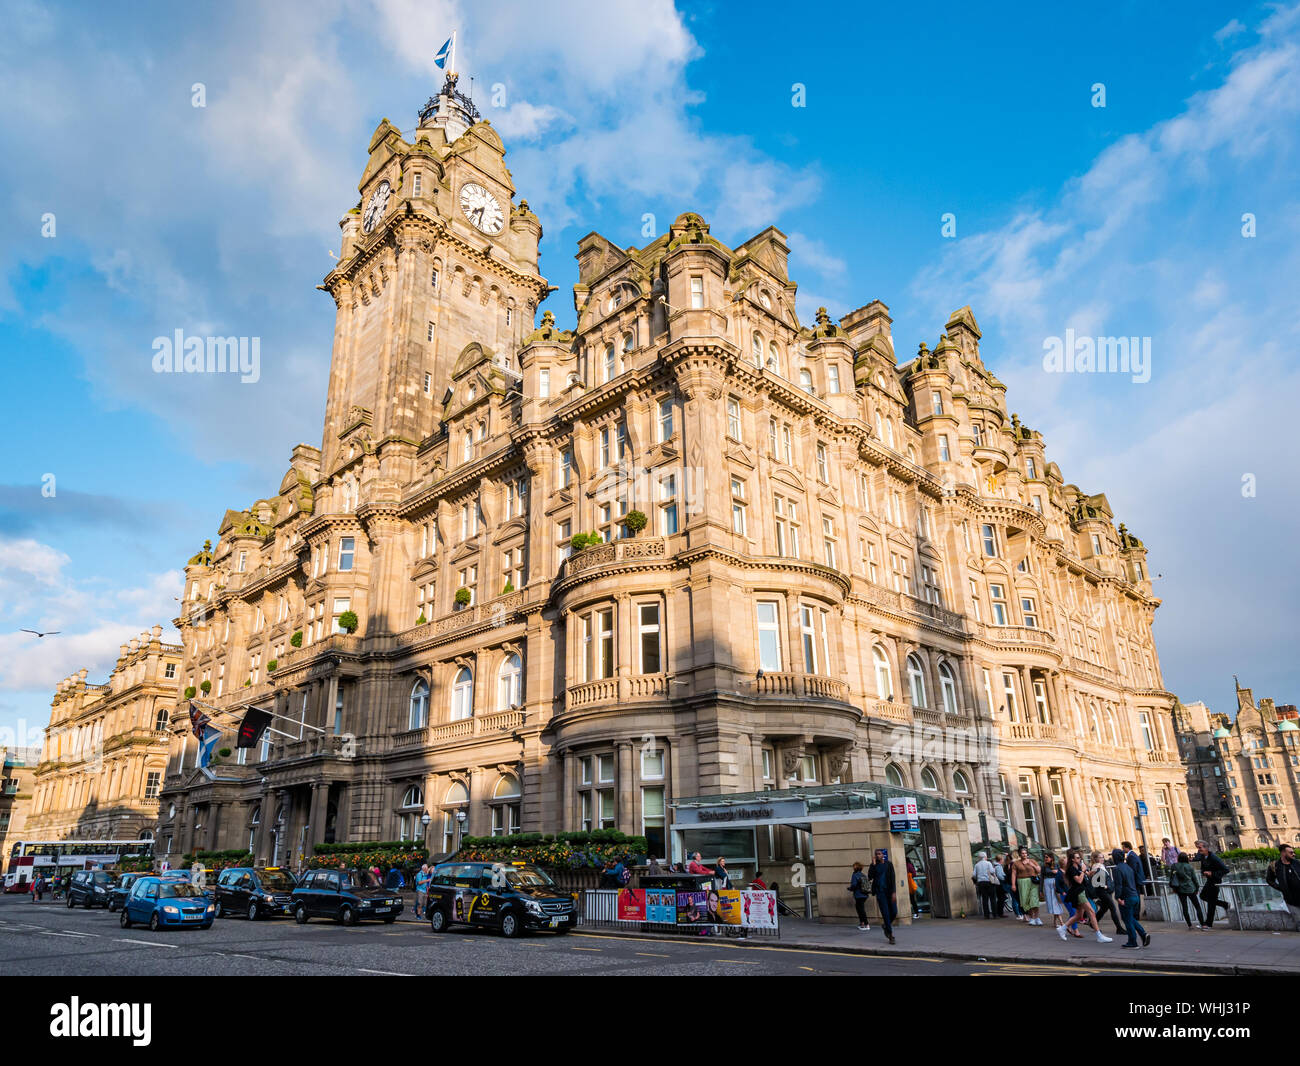 Le soir, soleil sur l'hôtel Rocco forte Balmoral en style baronial écossais par William Hamilton Beattie, Princes Street, Édimbourg, Écosse, Royaume-Uni Banque D'Images